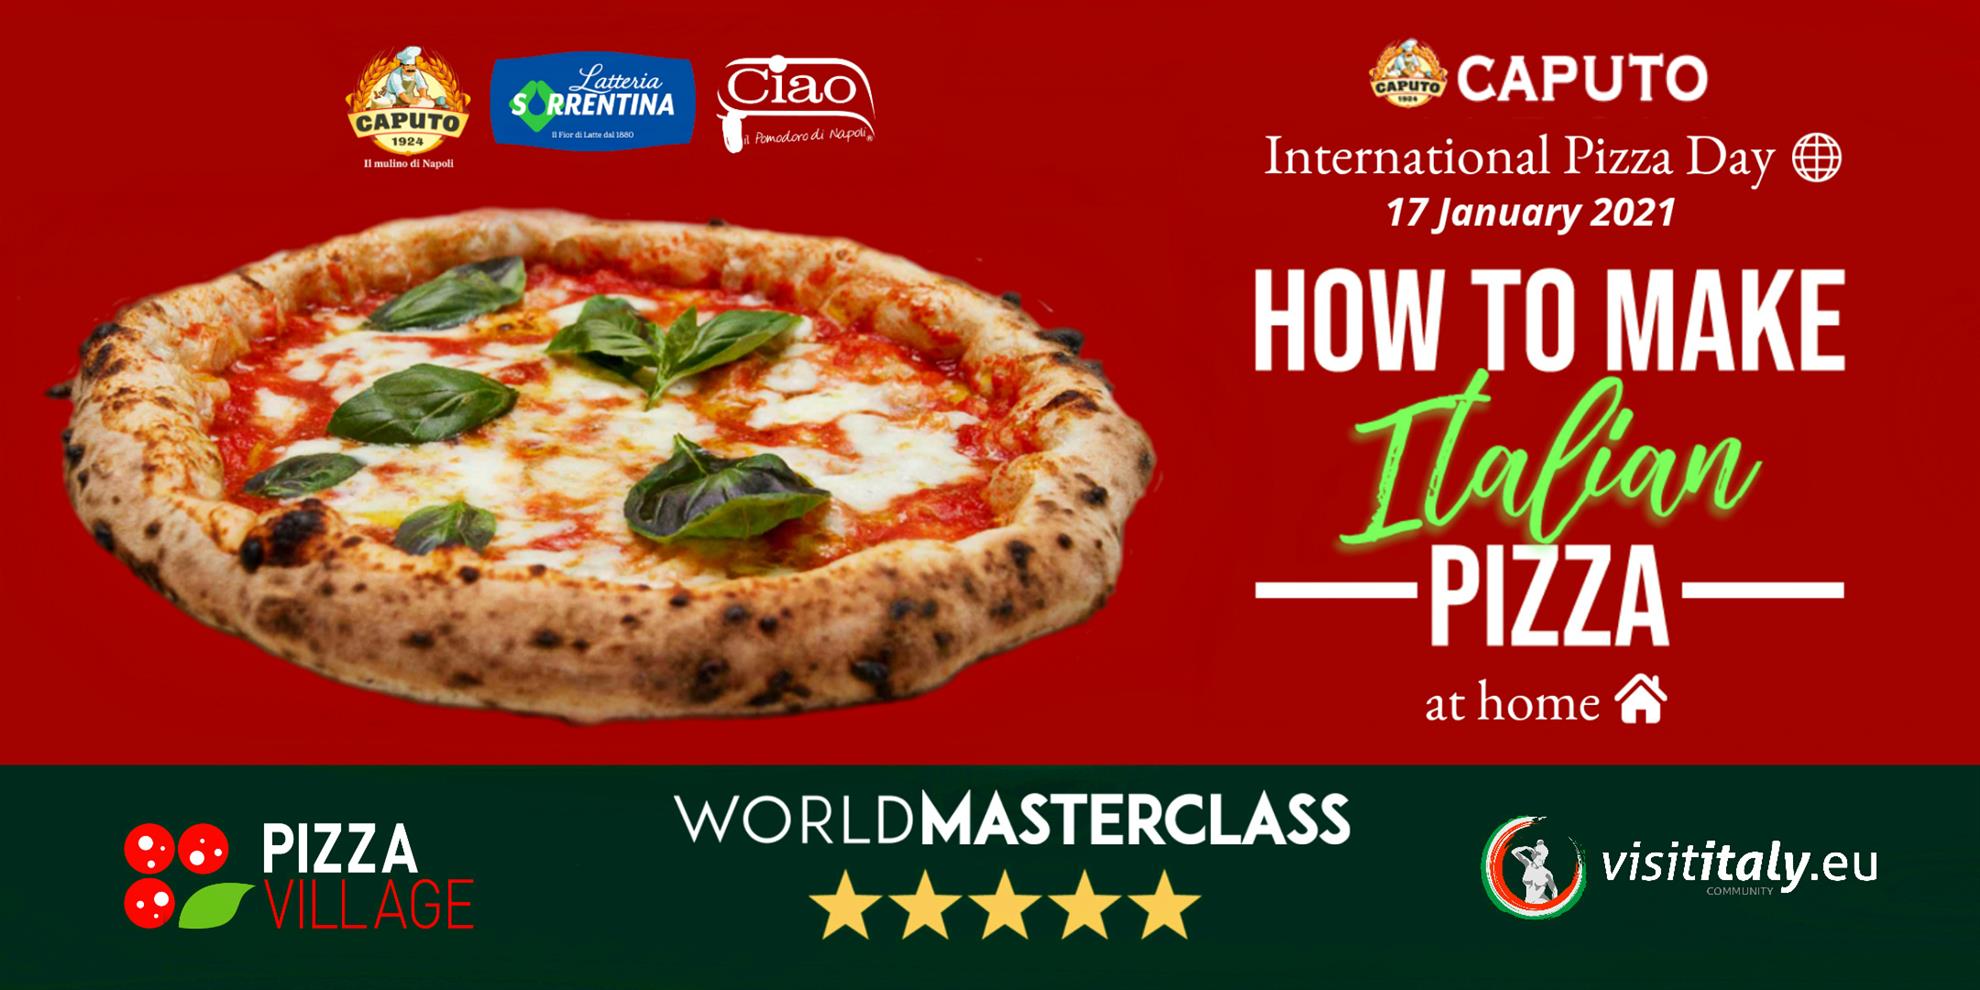 Masterclass internazionale sulla pizza